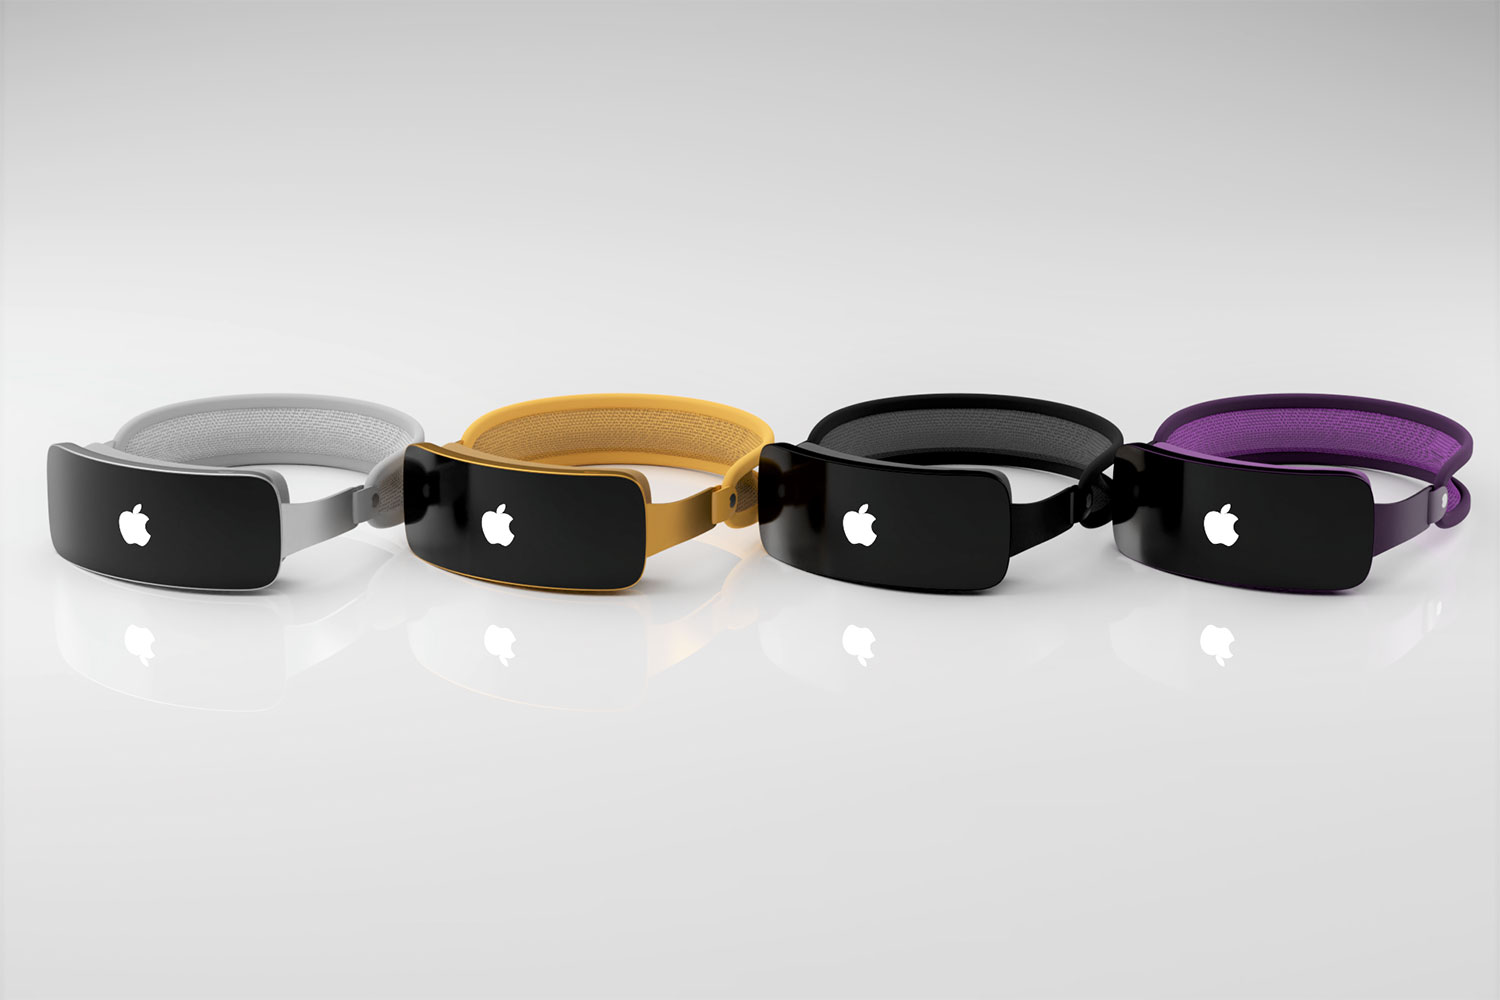 Uma renderização de quatro headsets de realidade mista da Apple (Reality Pro) em várias cores em uma superfície.